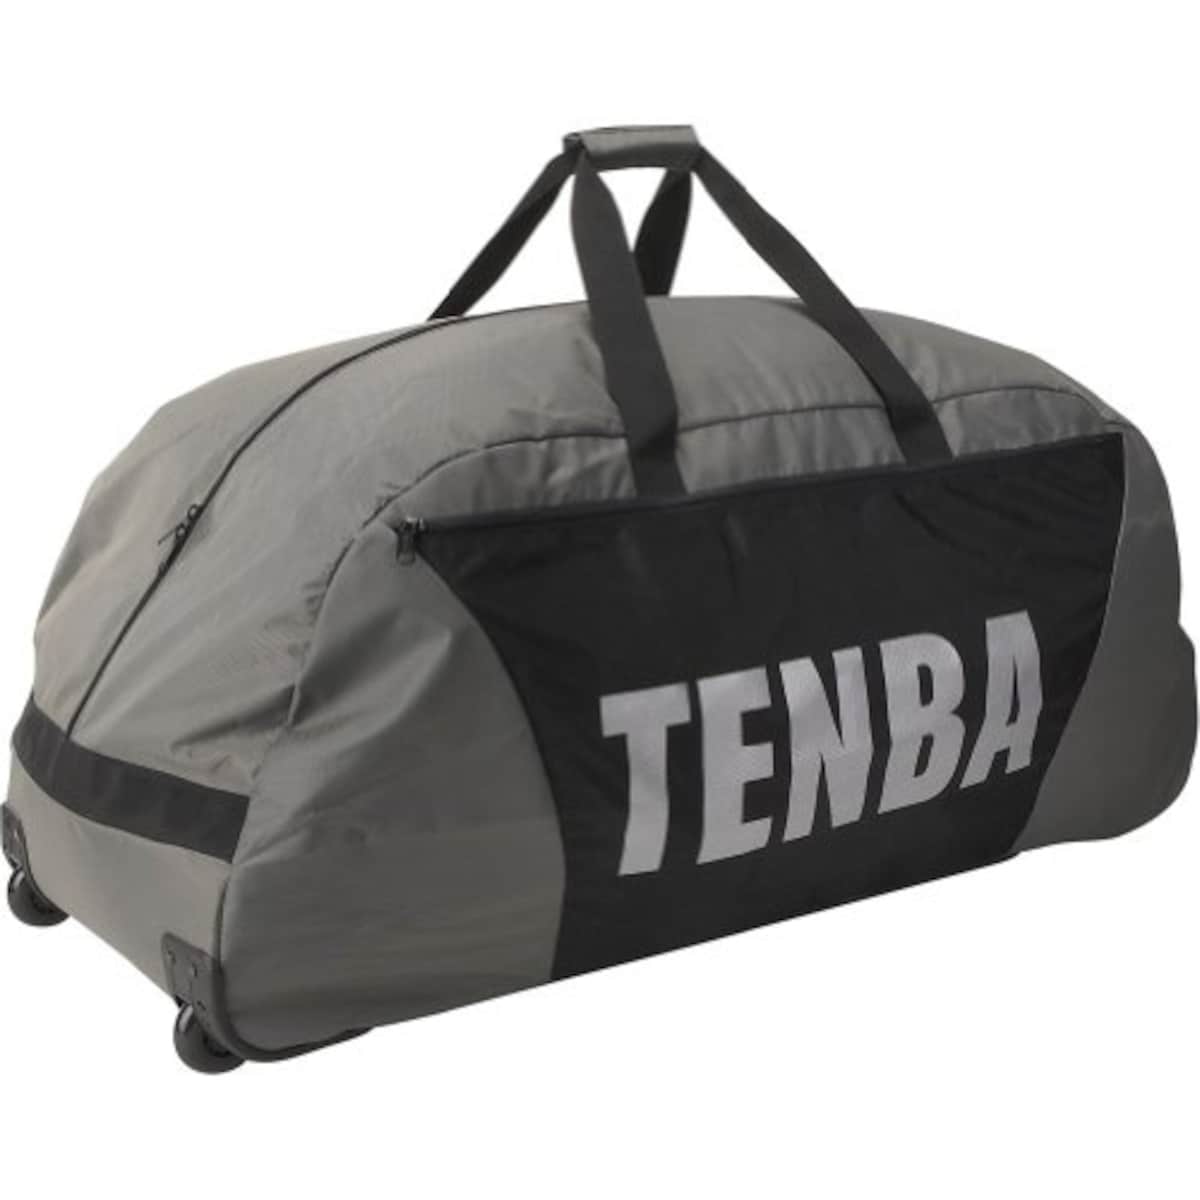 TENBA カートバッグ シュートアウト 多目的ダッフル ローラー付 シルバー/ブラック 632-902